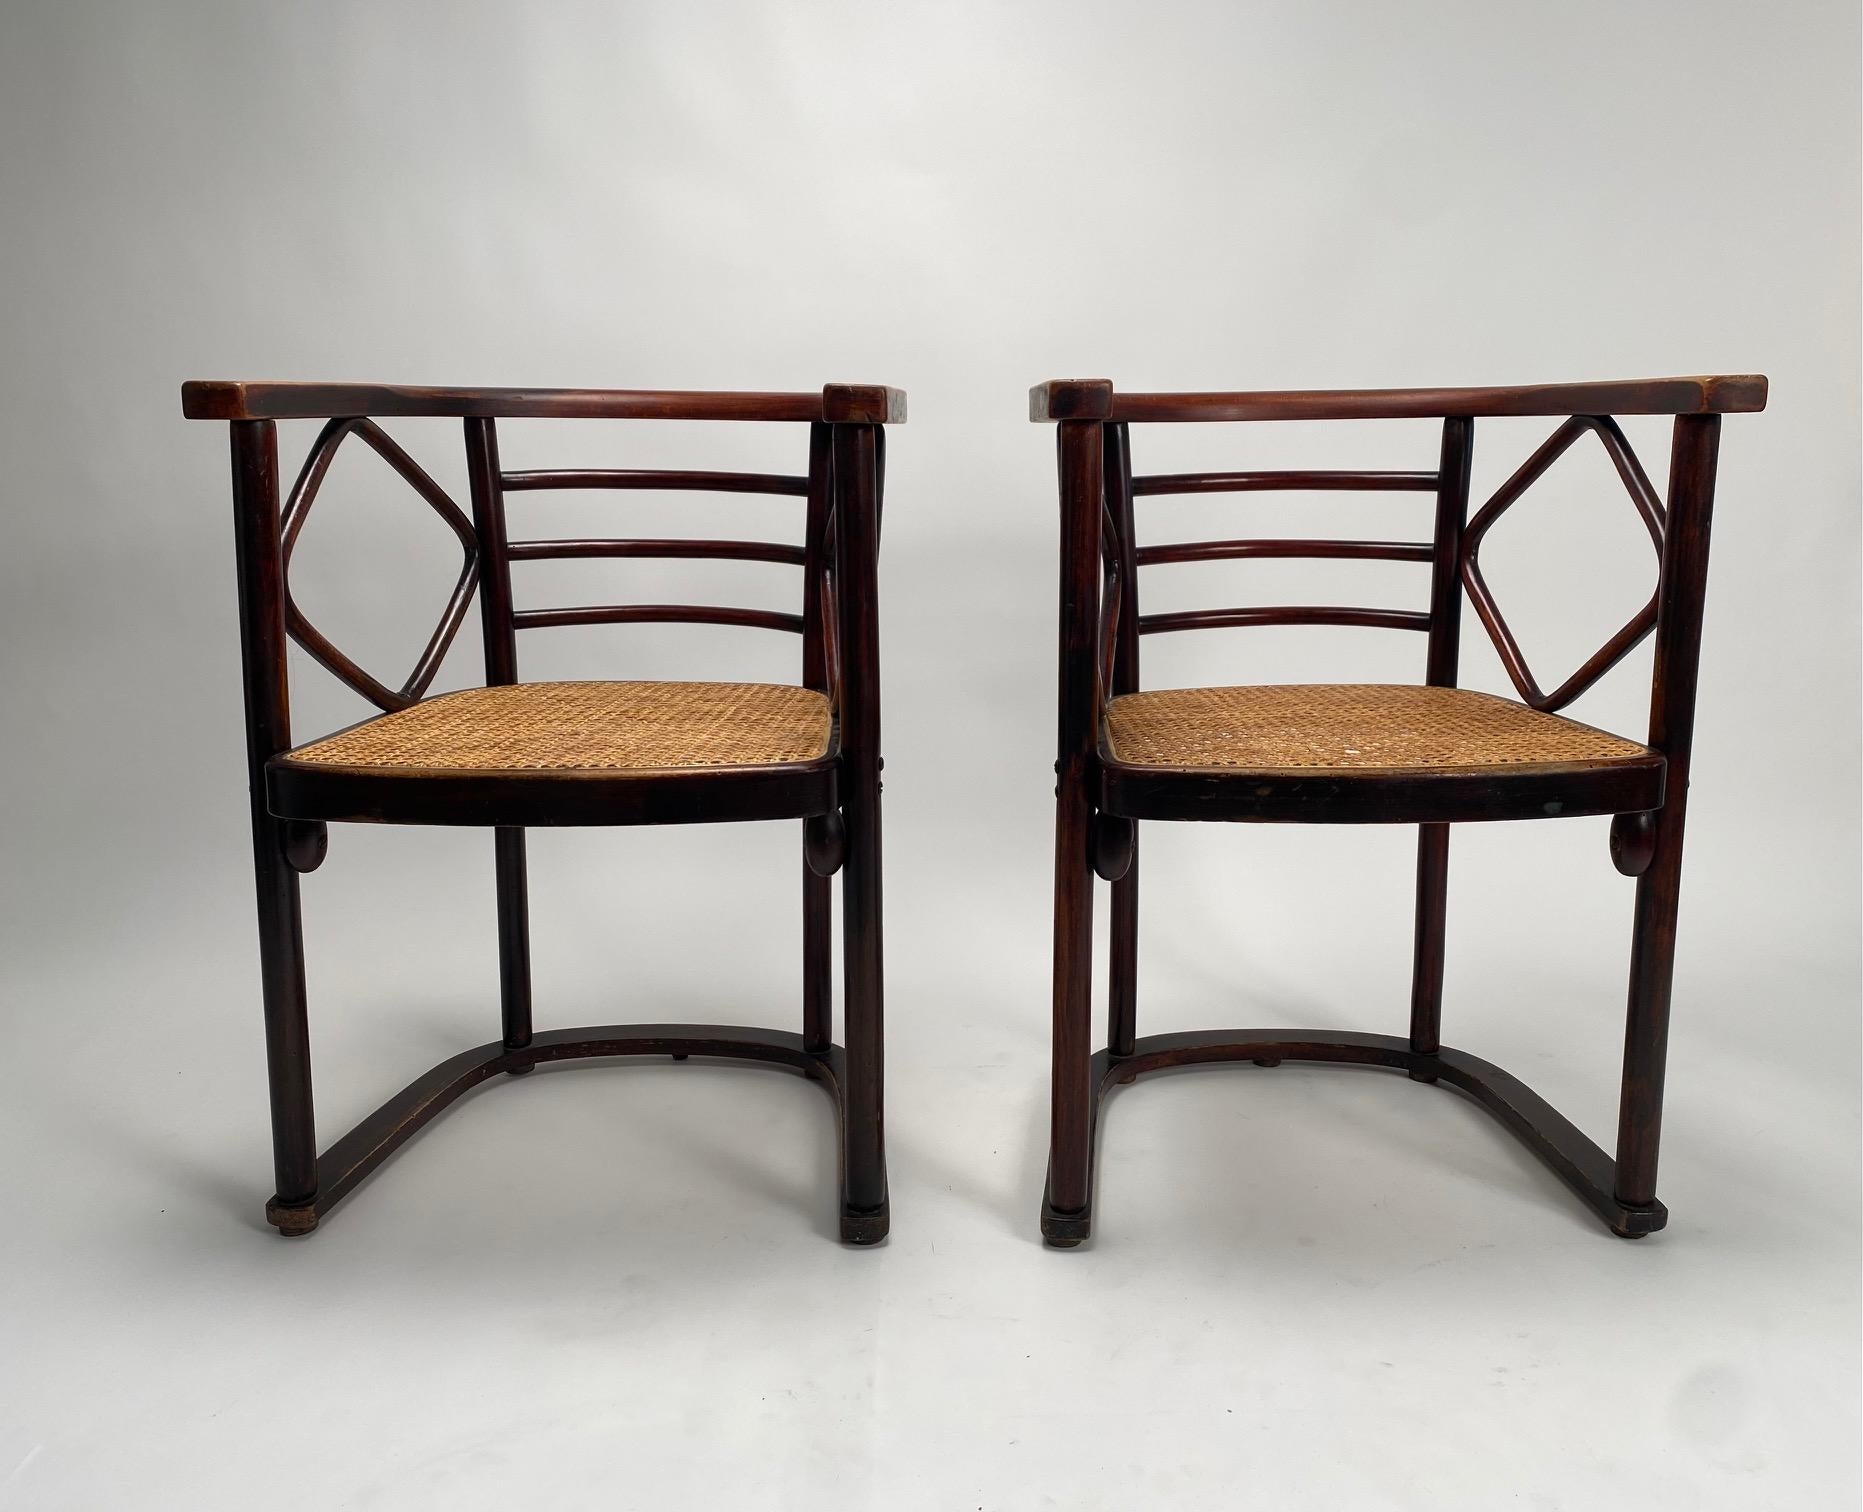 Paire de fauteuils en bois courbé mod. Fledermaus de Josef Hoffmann pour Thonet, années 1910

Il s'agit de l'une des créations les plus célèbres de l'architecte autrichien Josef Hoffmann, l'un des pères fondateurs de la Sécession viennoise.